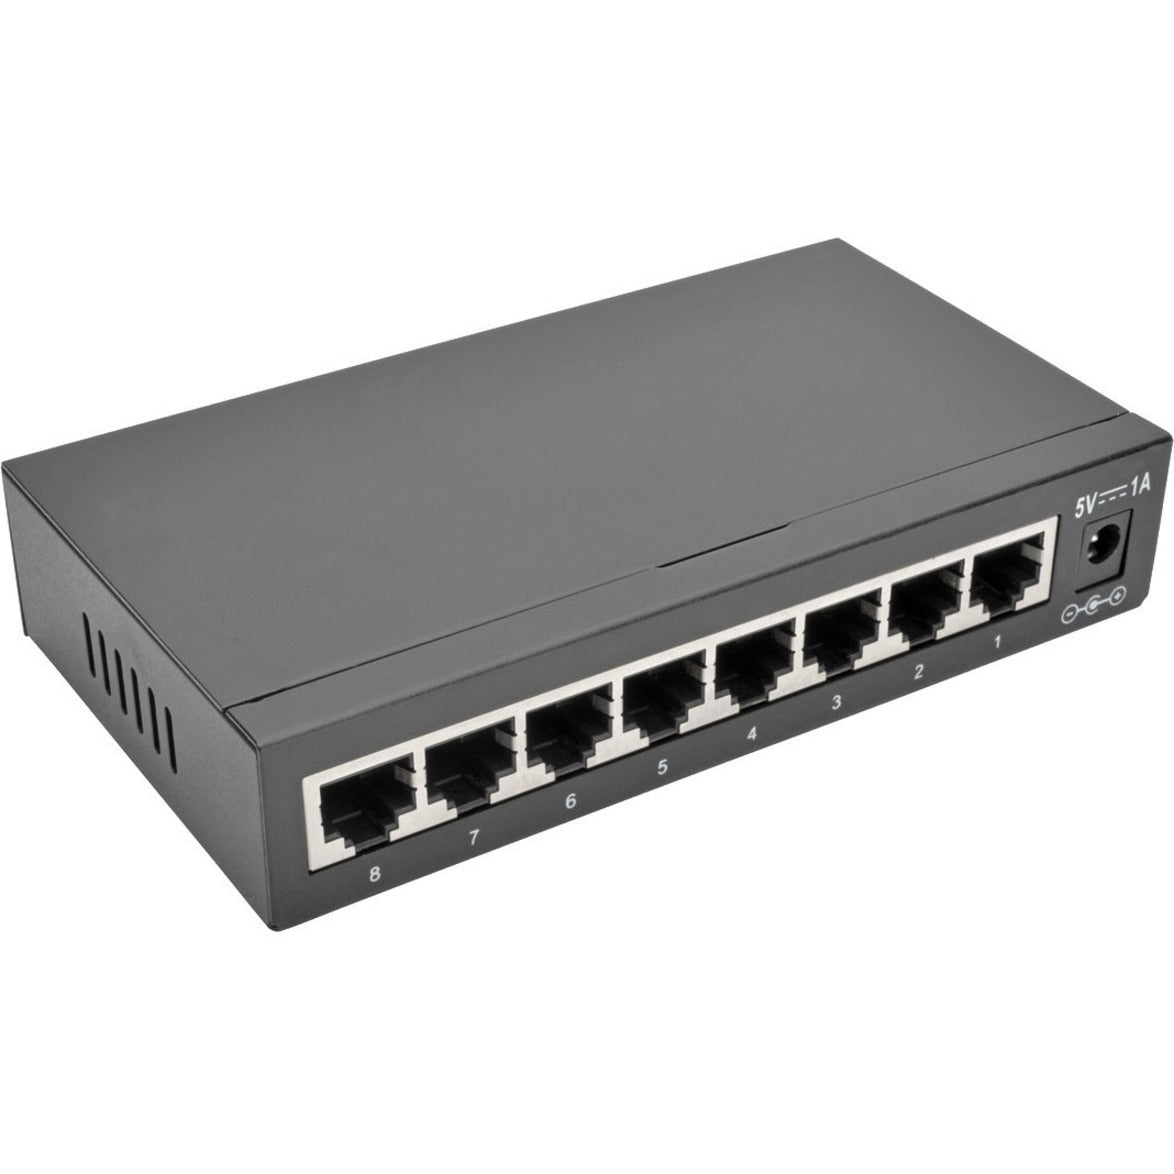 Tripp Lite NG8 8-puerto 10/100/1000 Mbps Gigabit Ethernet Switch de Escritorio no Administrado Carcasa de Metal. Marca: Tripp Lite. Traducir marca: Tripp Lite es Tripp Lite.